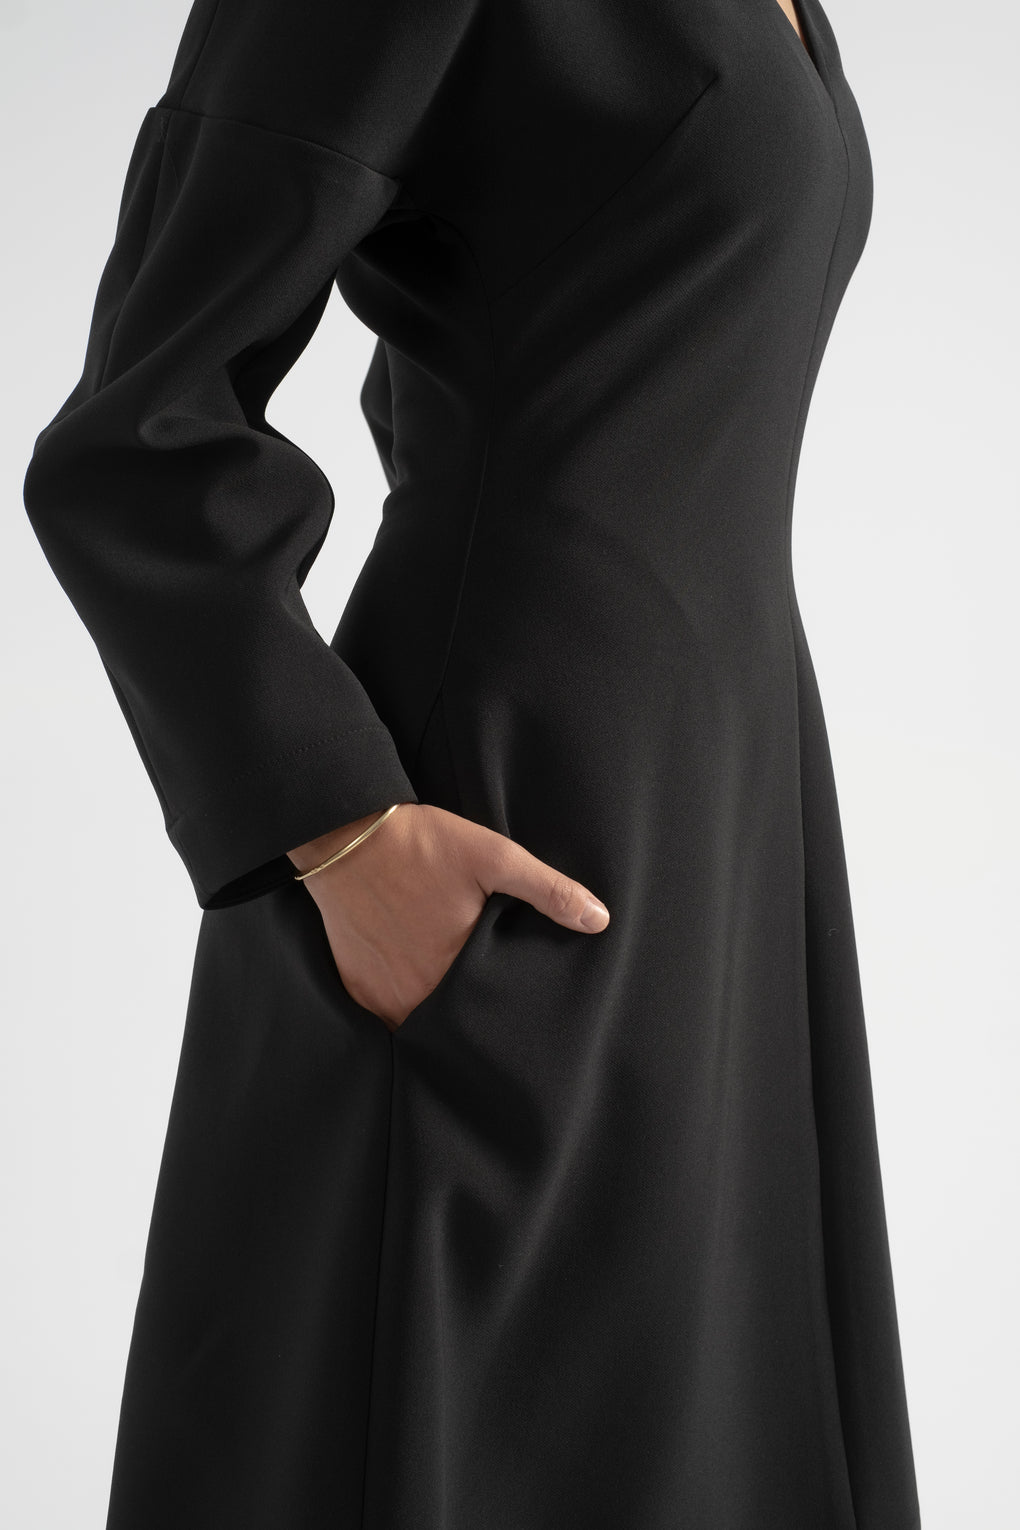 Nomia dolman sleeve dress-Nomia dress-black dress-long sleeve black dress-dolman sleeve dress-black fall dress-Idun-St. Paul